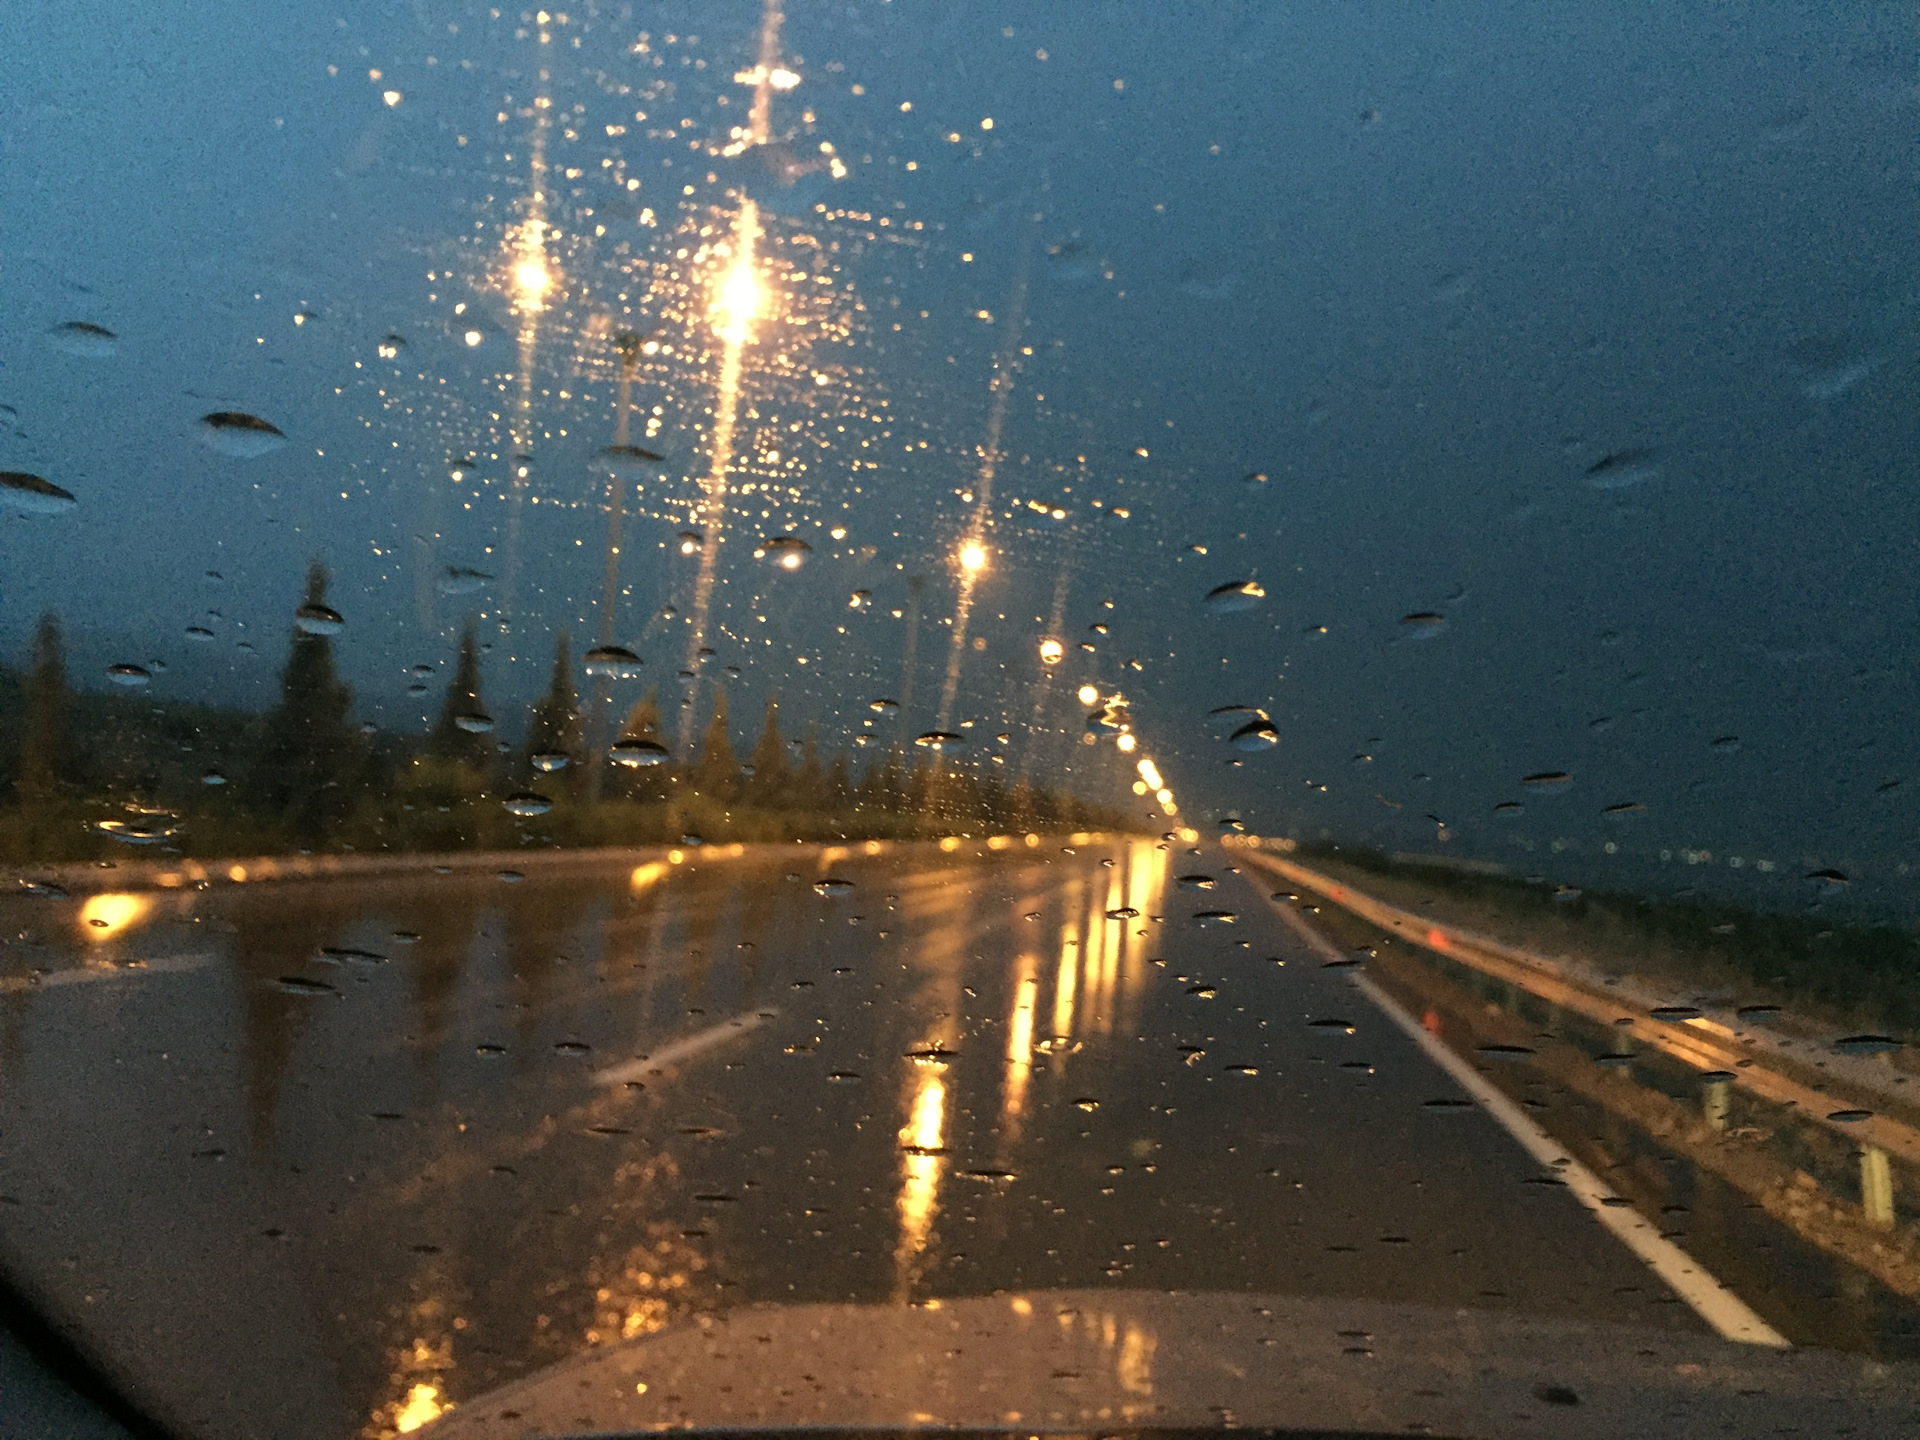 Автомобиль ночью на дороге. Дорога ночь дождь. Дождь из окна машины. Ночная трасса дождь. Ночь машина дорога дождь.